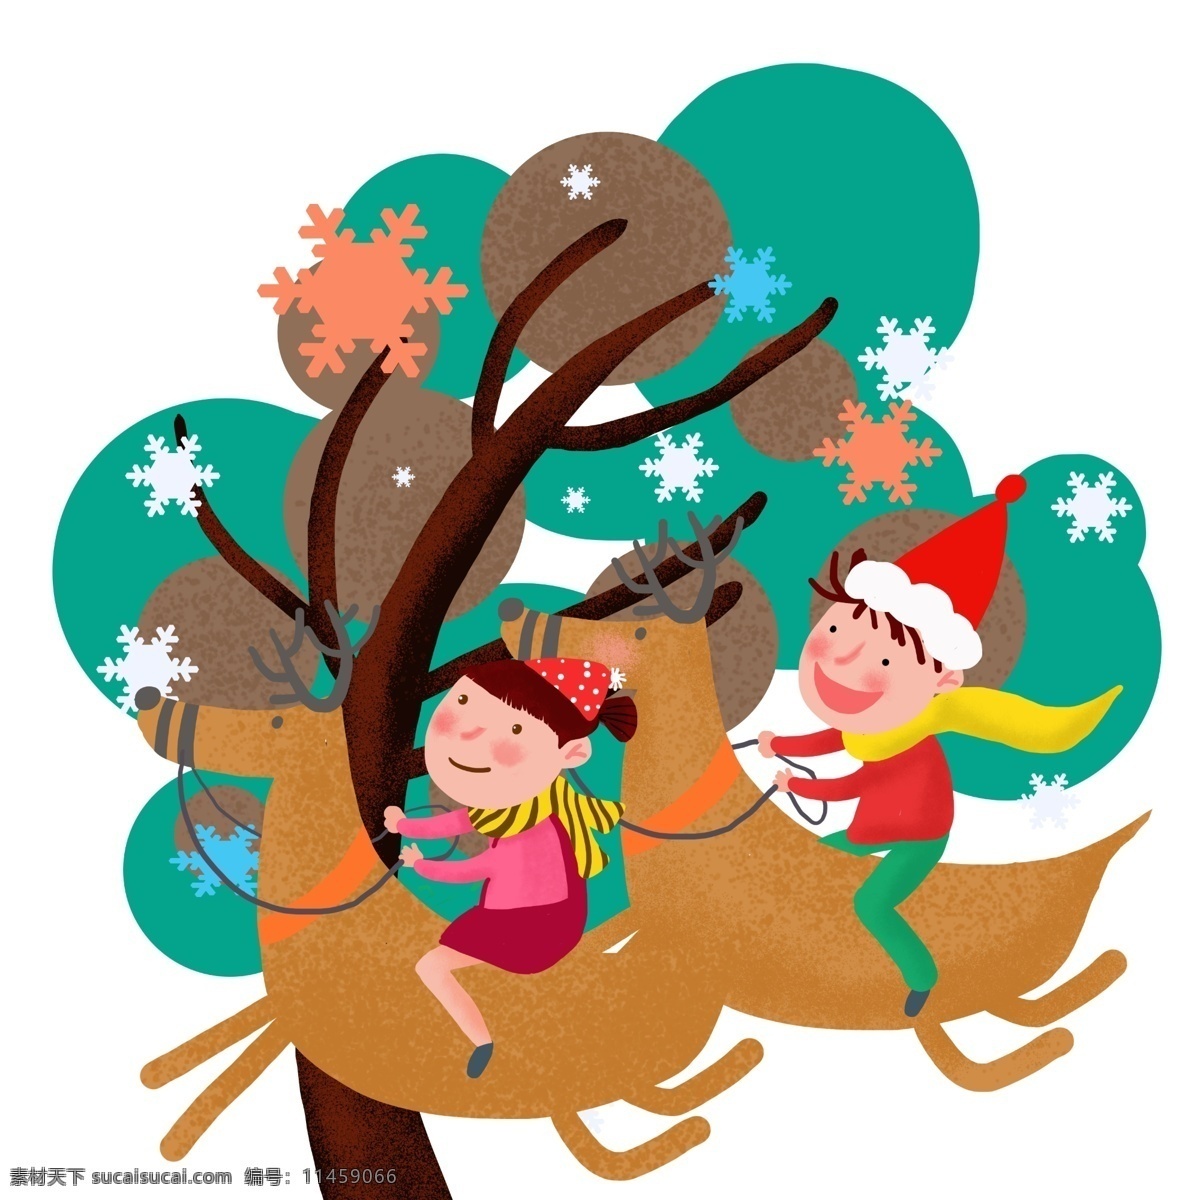 手绘 圣诞节 儿童 小鹿 插画 圣诞节小鹿 梅花鹿 圣诞帽子 圣诞雪花 彩色雪花 手绘小鹿 圣诞人物插画